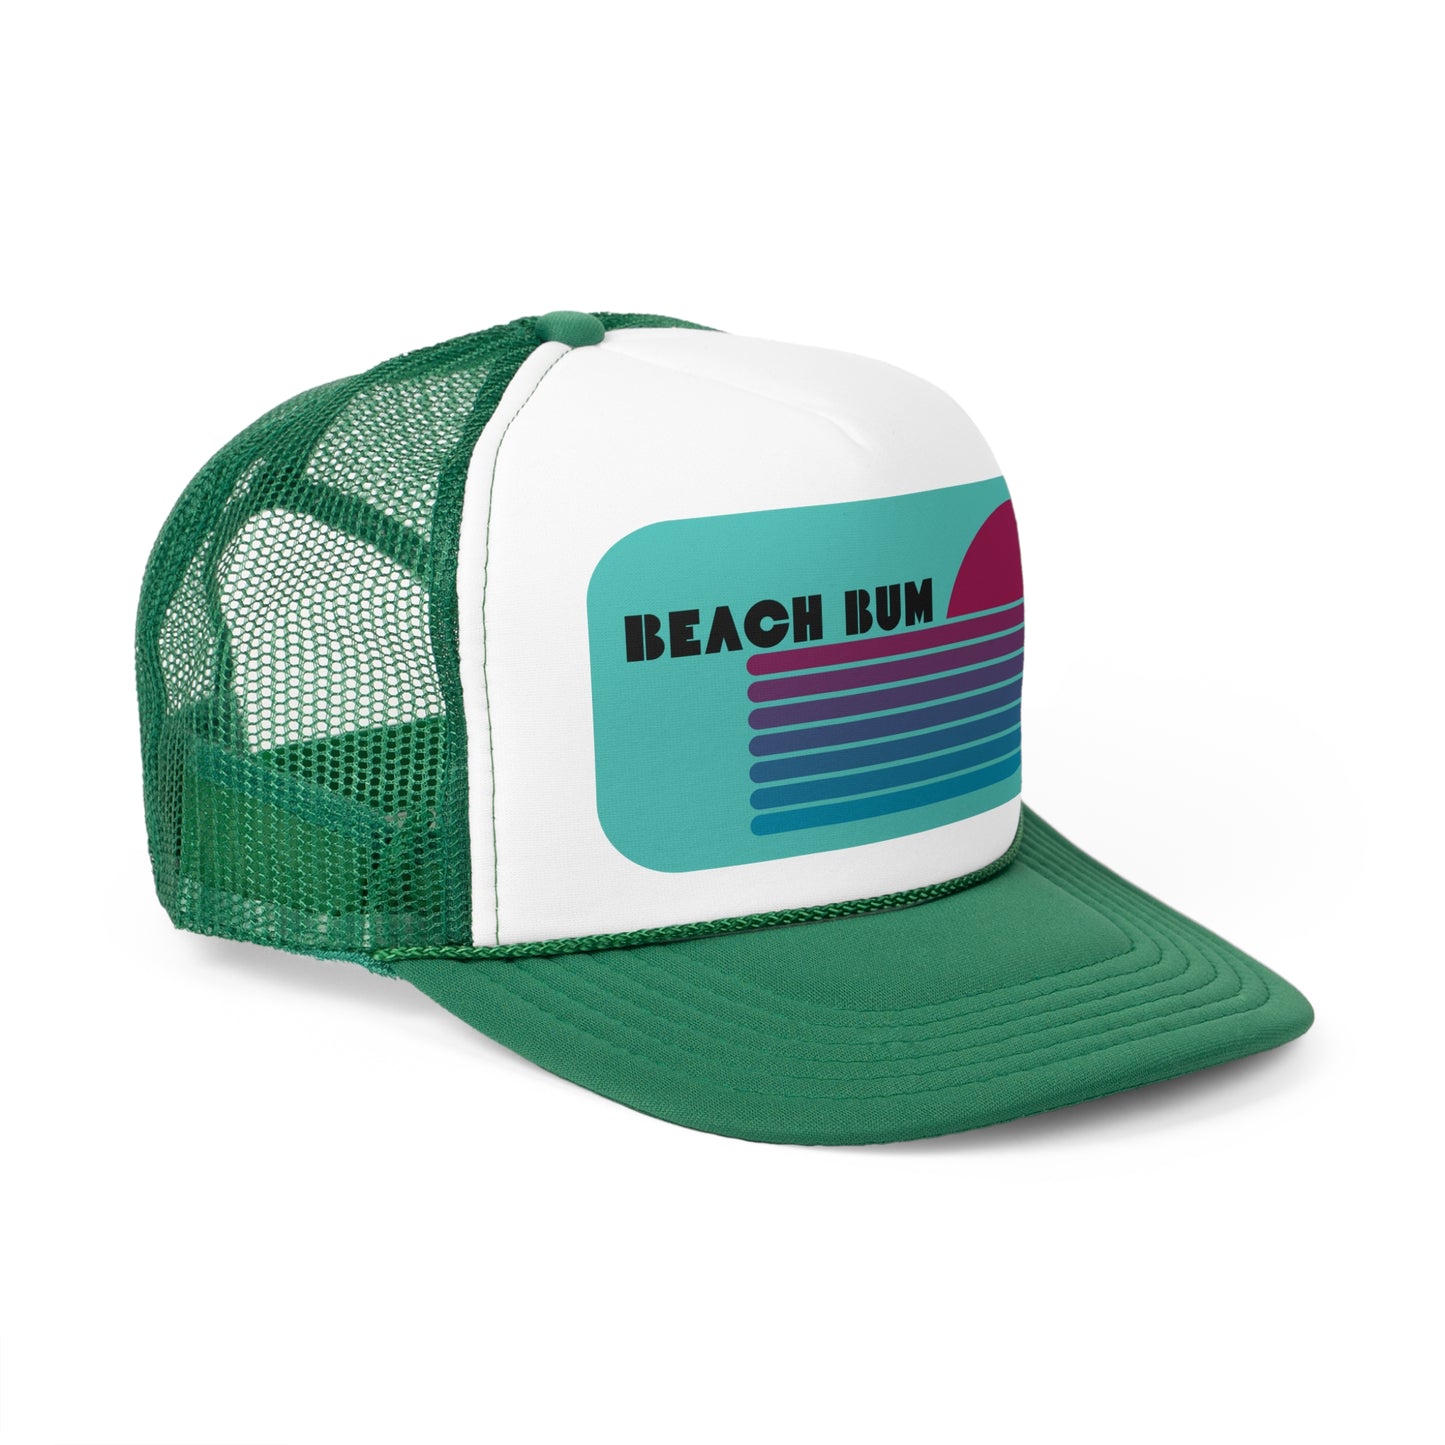 Trucker Hat Retro Design Minimalist Trucker Cap Beach Bum Abstract Trucker Hat Vintage Style Trucker Hat For The Beach Hat